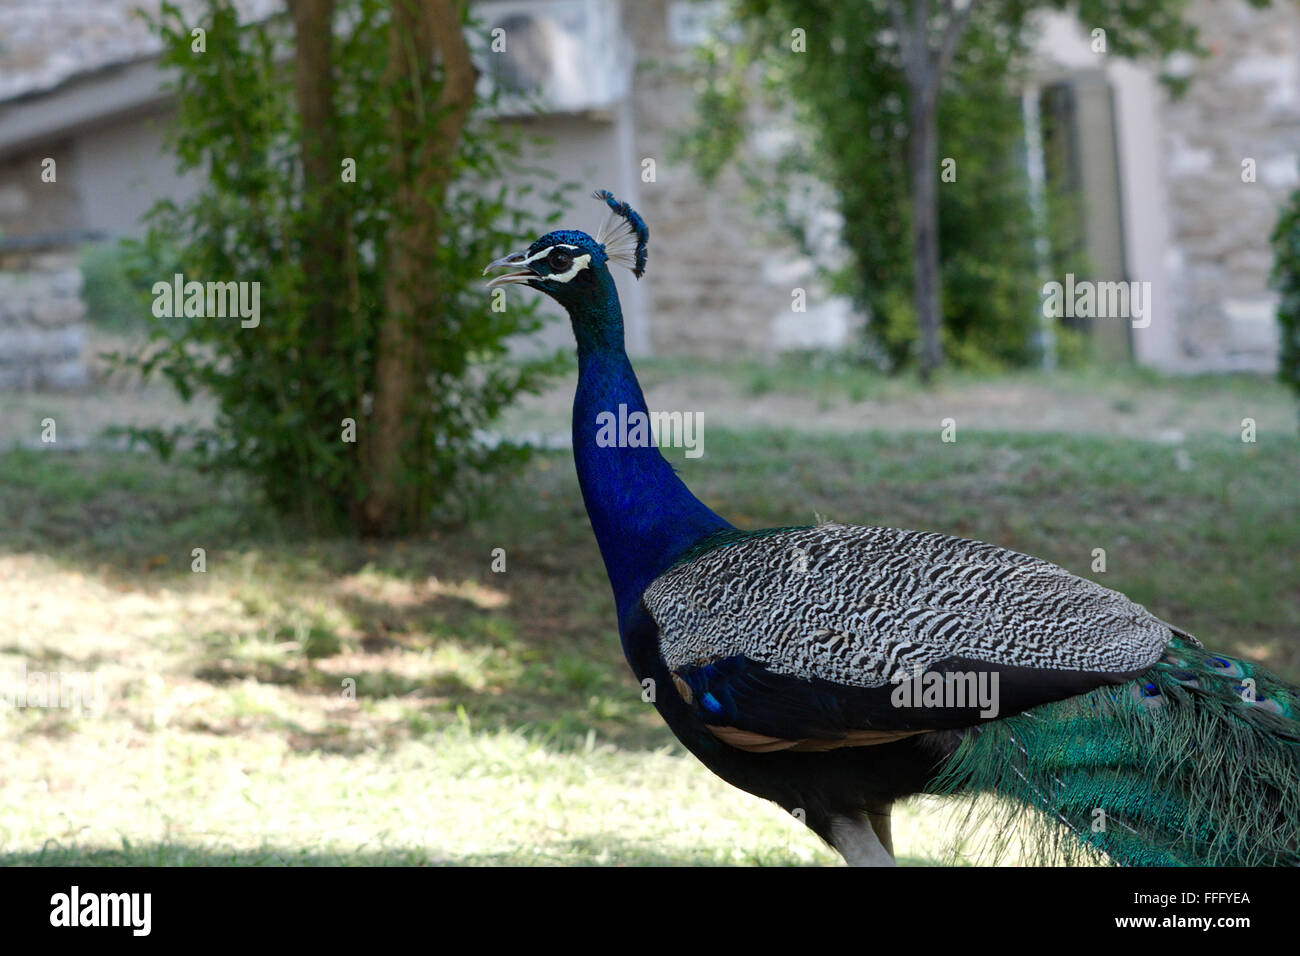 a Peacock Stock Photo